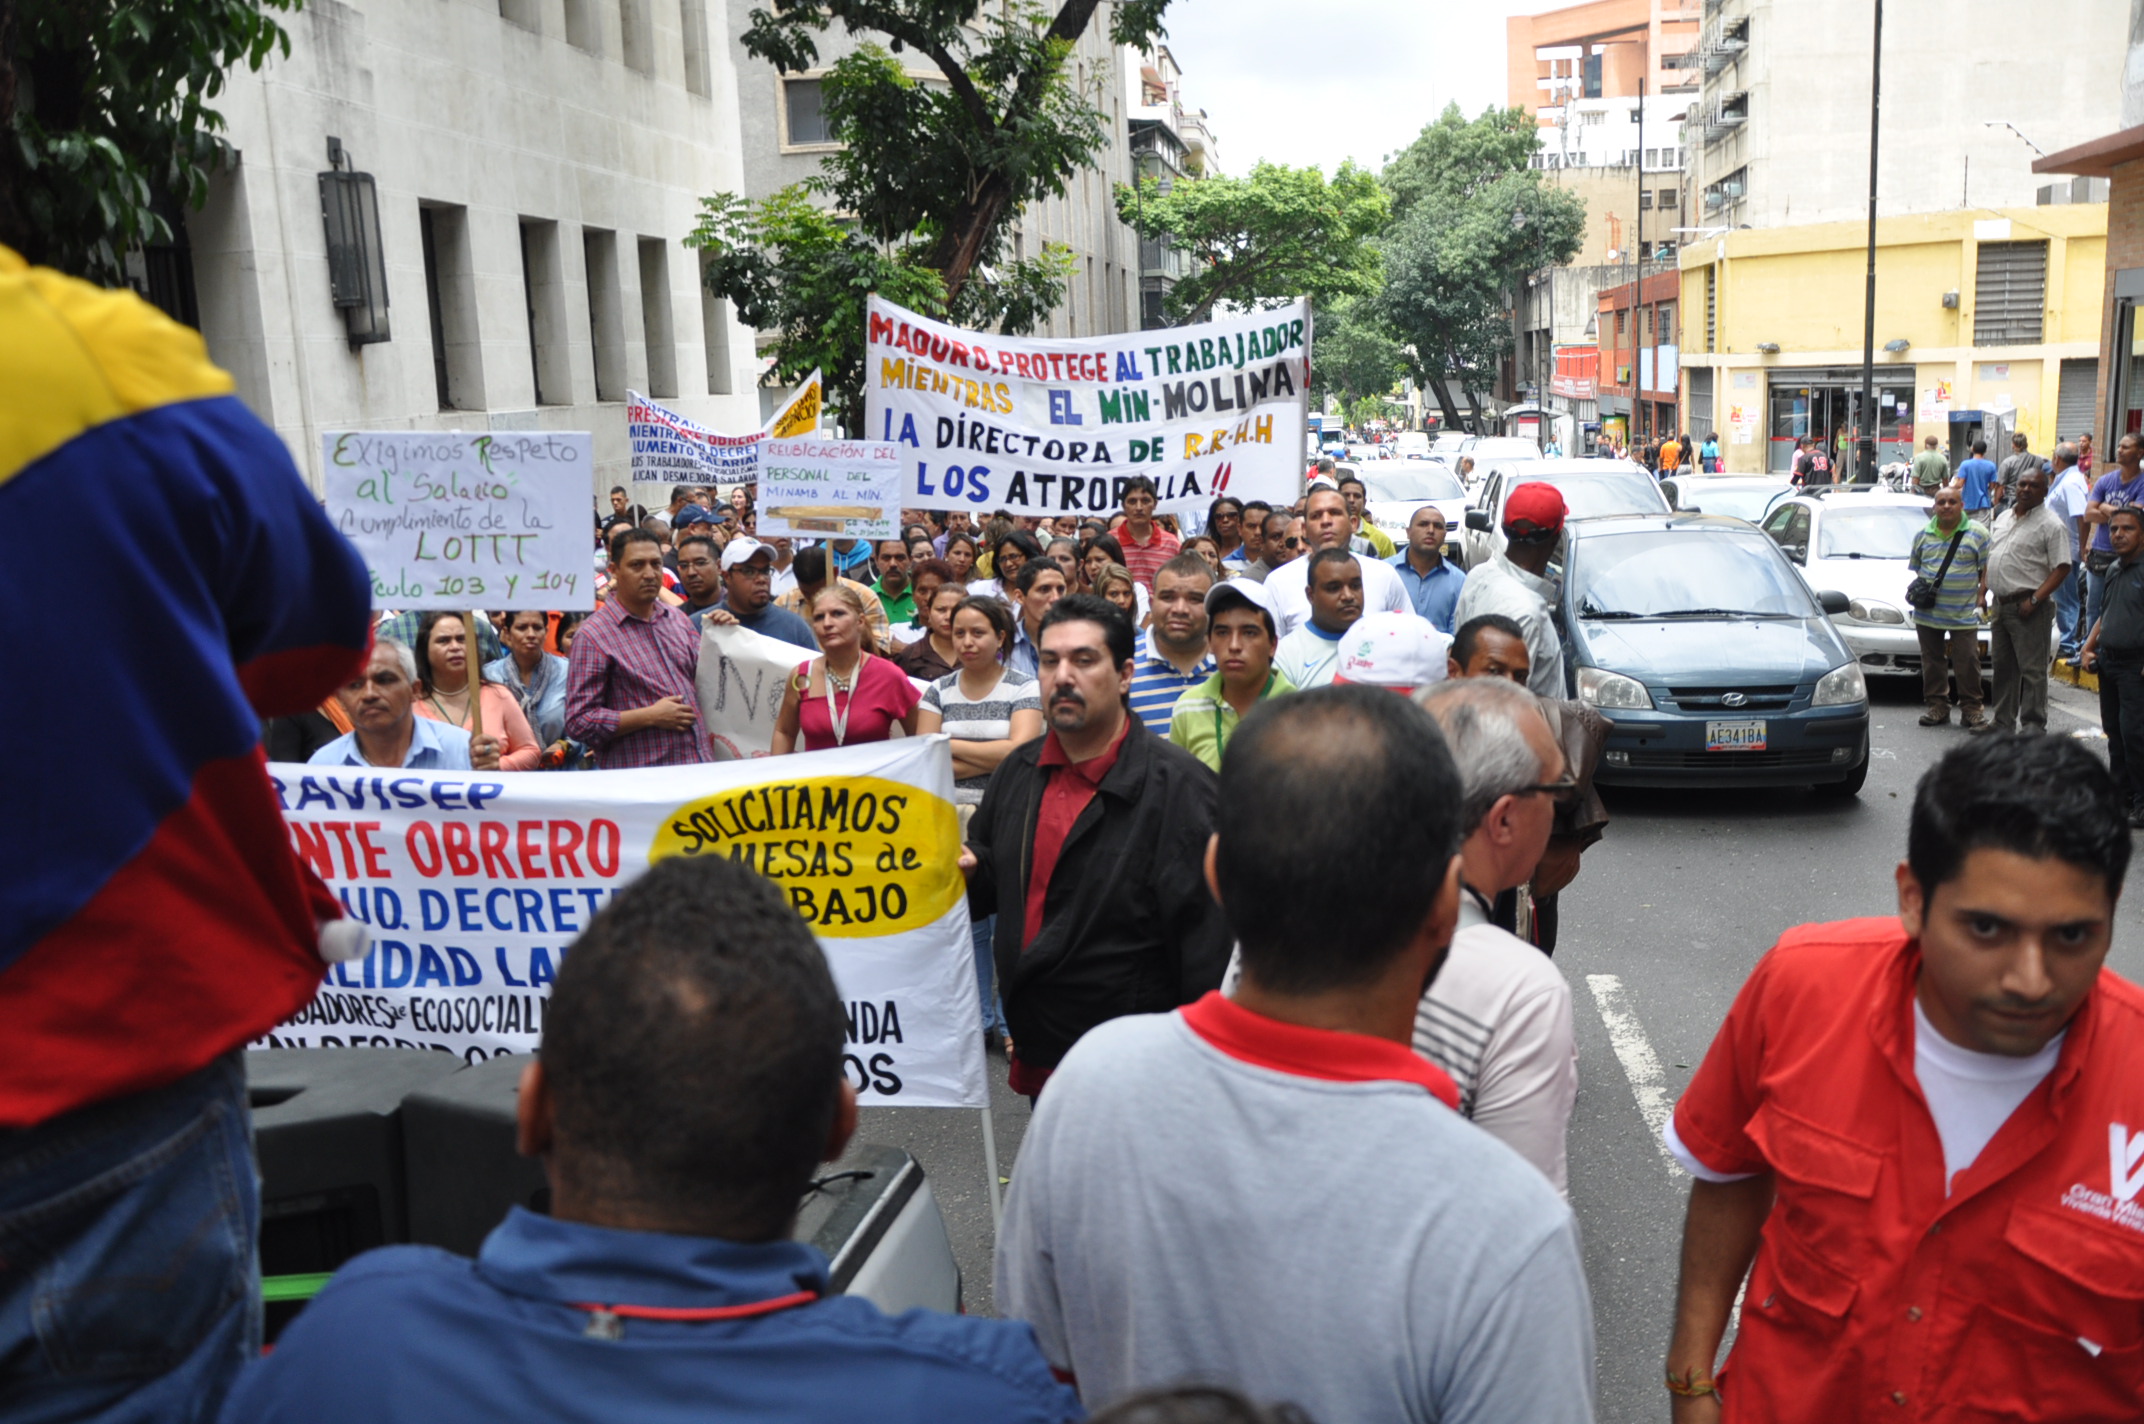 Trabajadores del Ministerio de Ambiente llaman “terrorista laboral” al ministro Molina (Fotos)